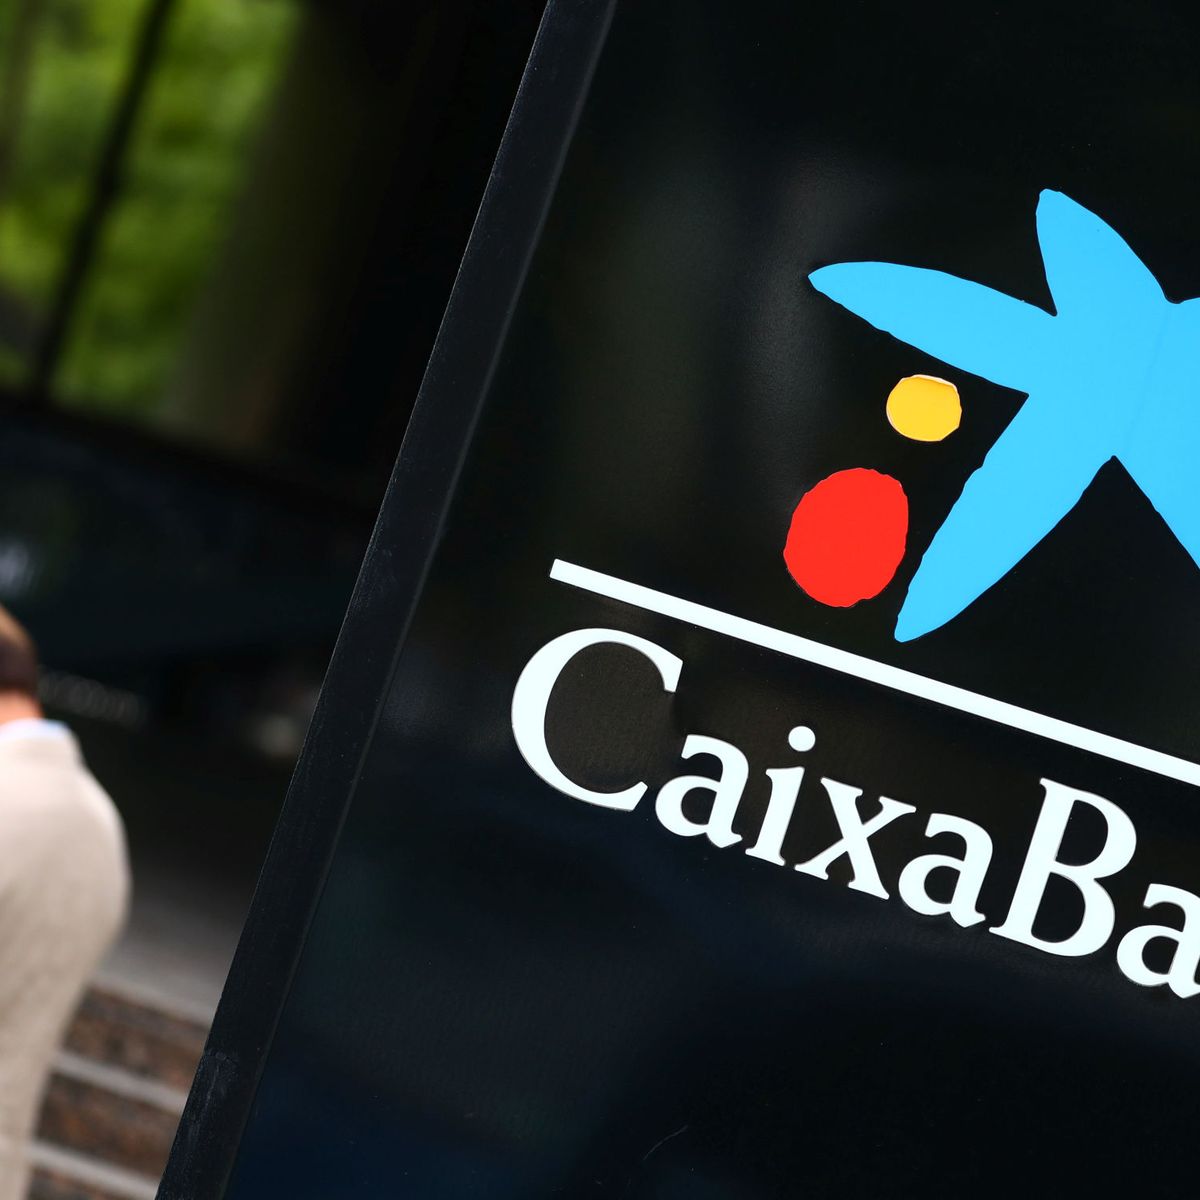 El doble rescate del Gobierno a CaixaBank